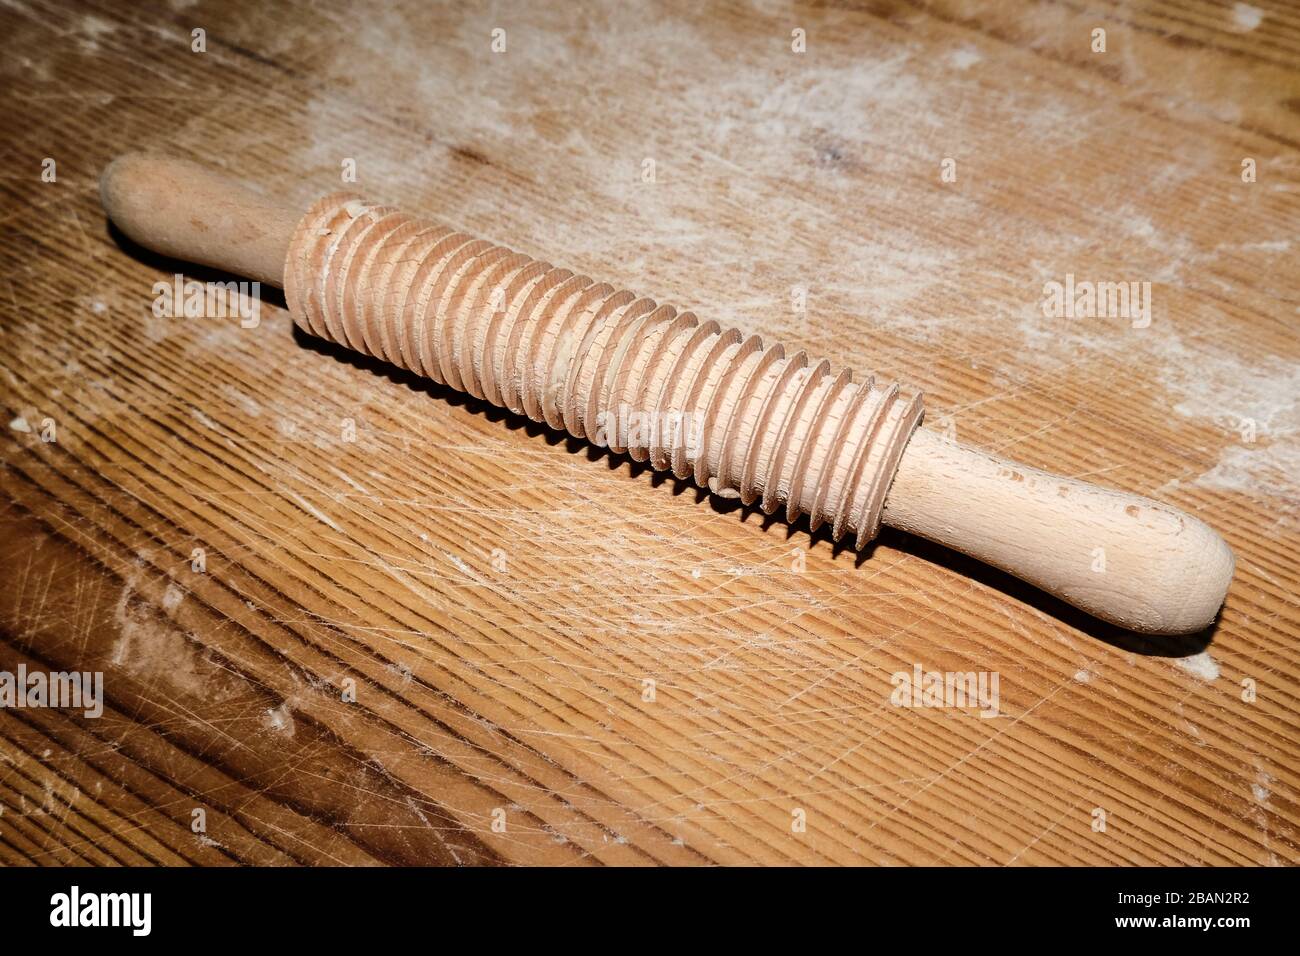 Broche de roulement isolée en bois strié sur table en bois, articles de cuisine faits maison Banque D'Images